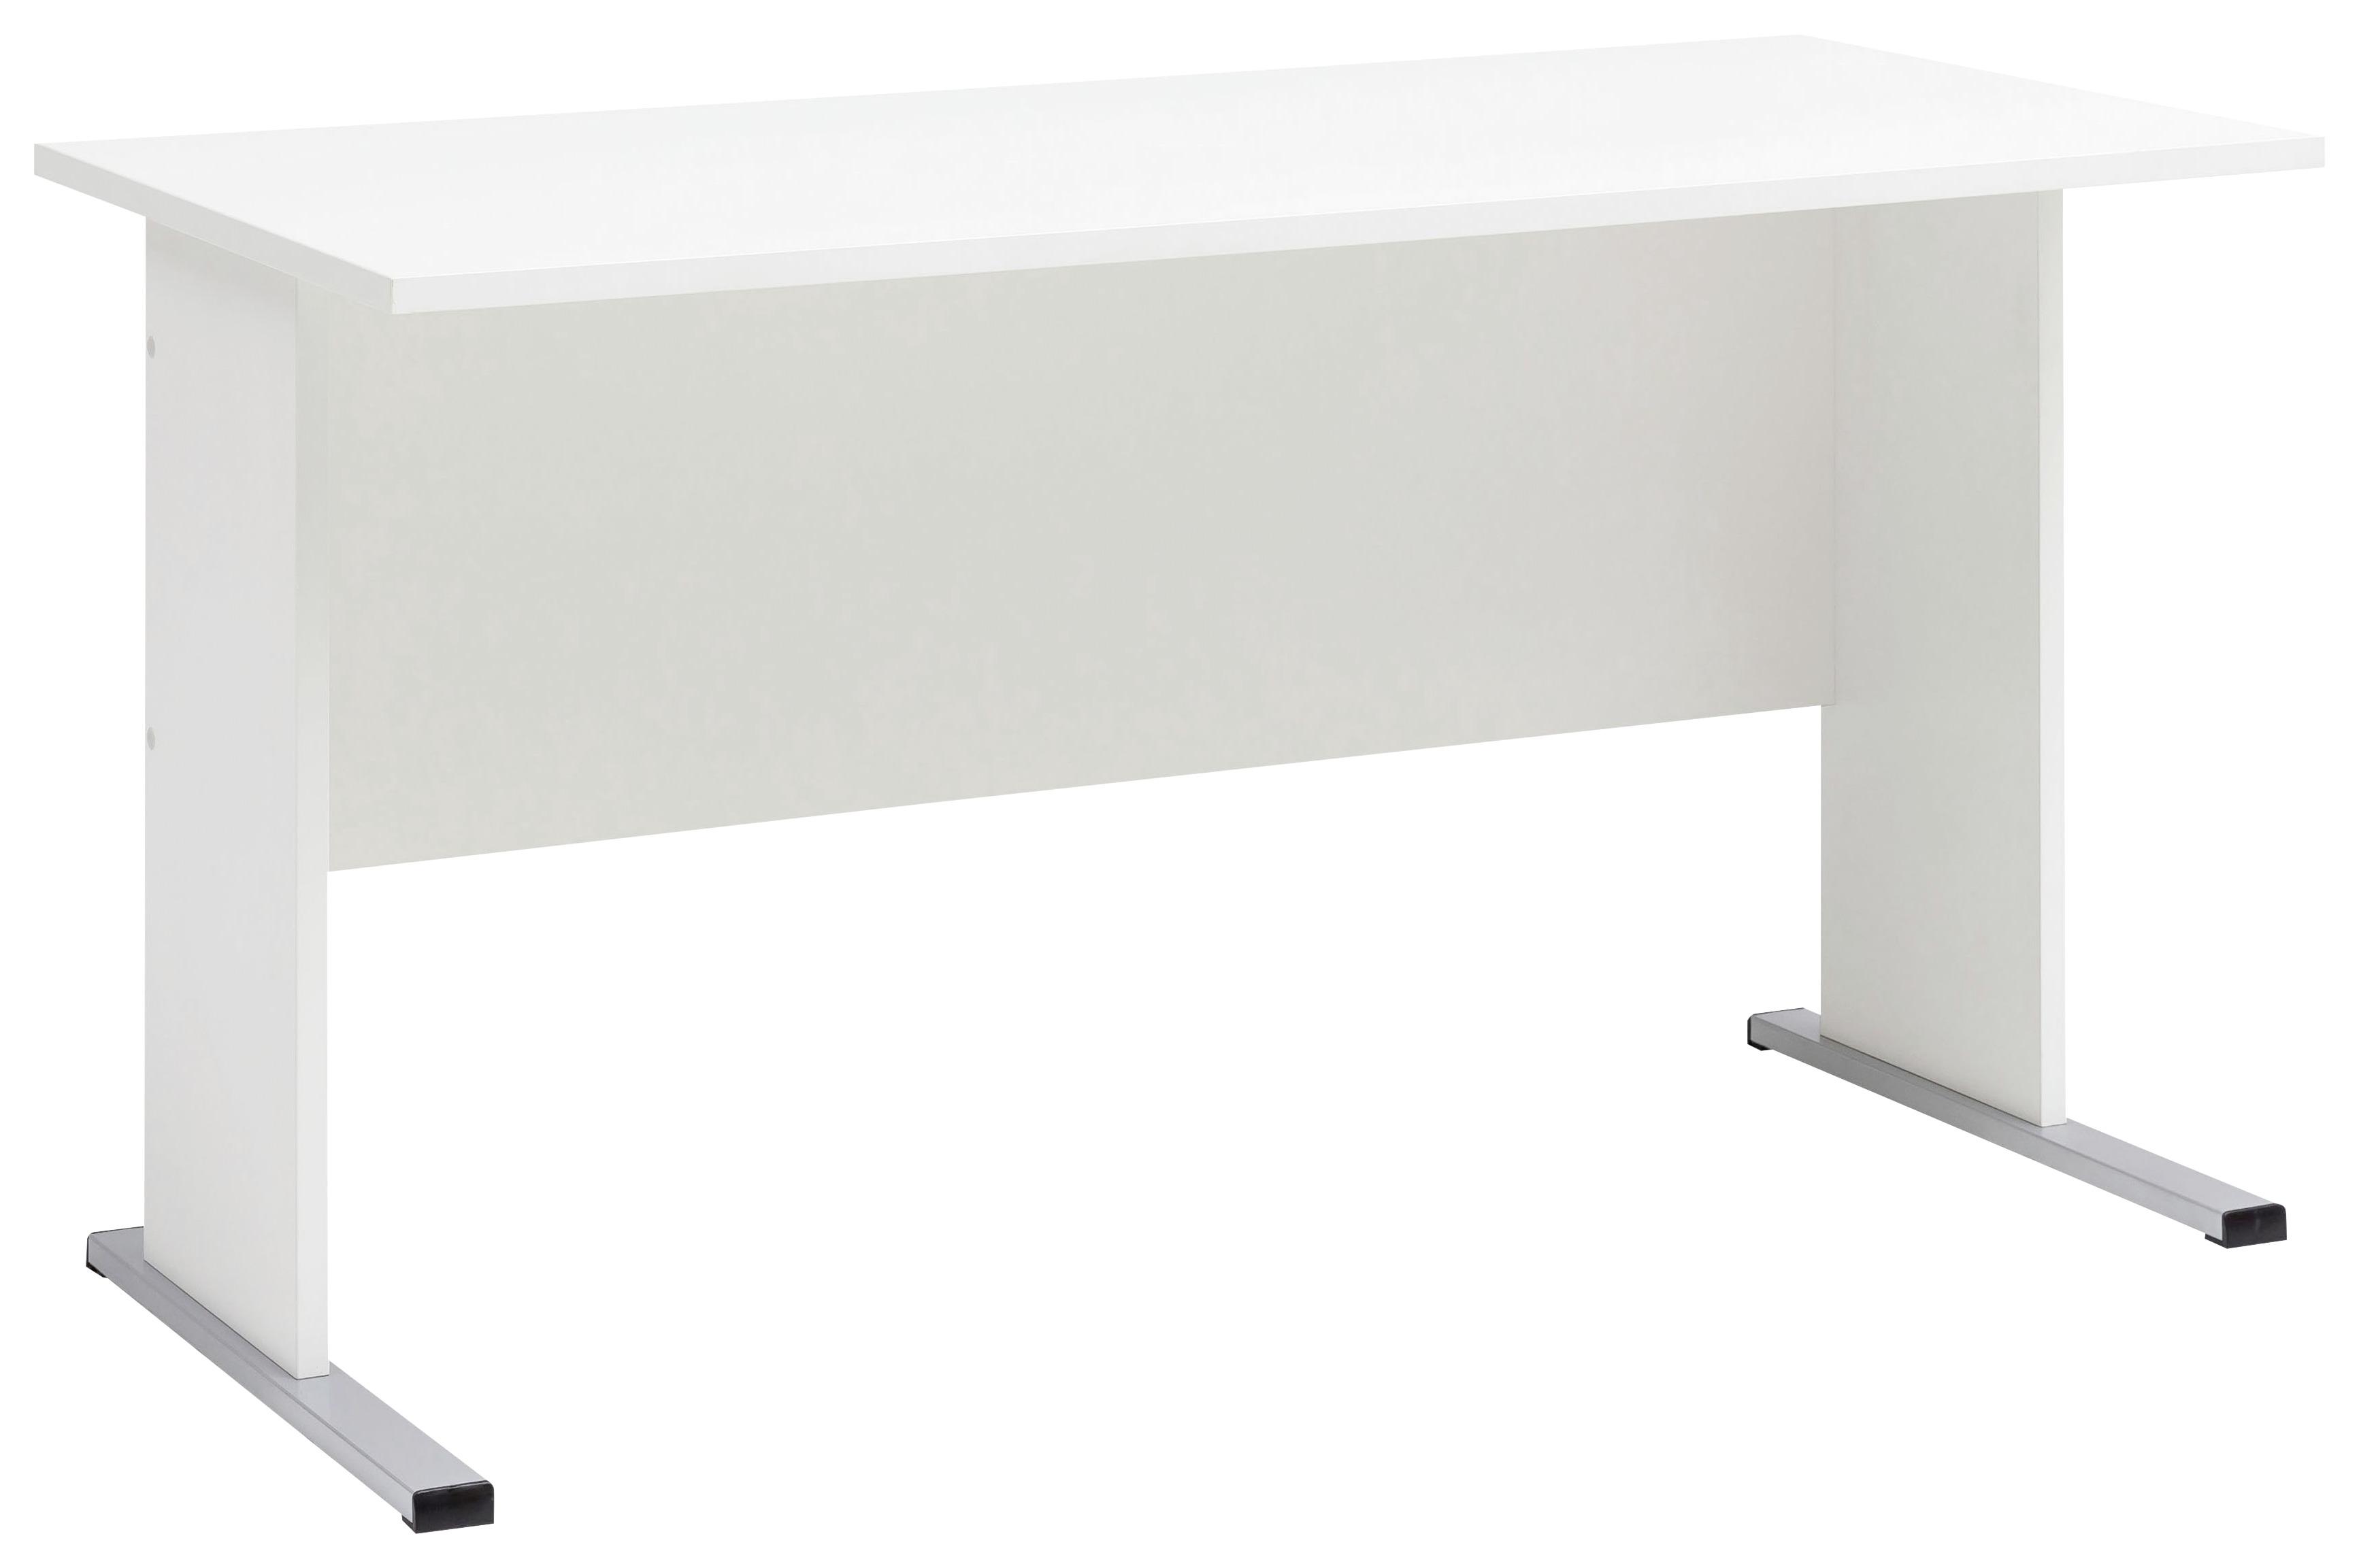 Schreibtisch B 140cm H 74,2cm Serie 200, Weiß - Silberfarben/Weiß, Basics, Holzwerkstoff/Metall (140/65/74,2cm) - MID.YOU